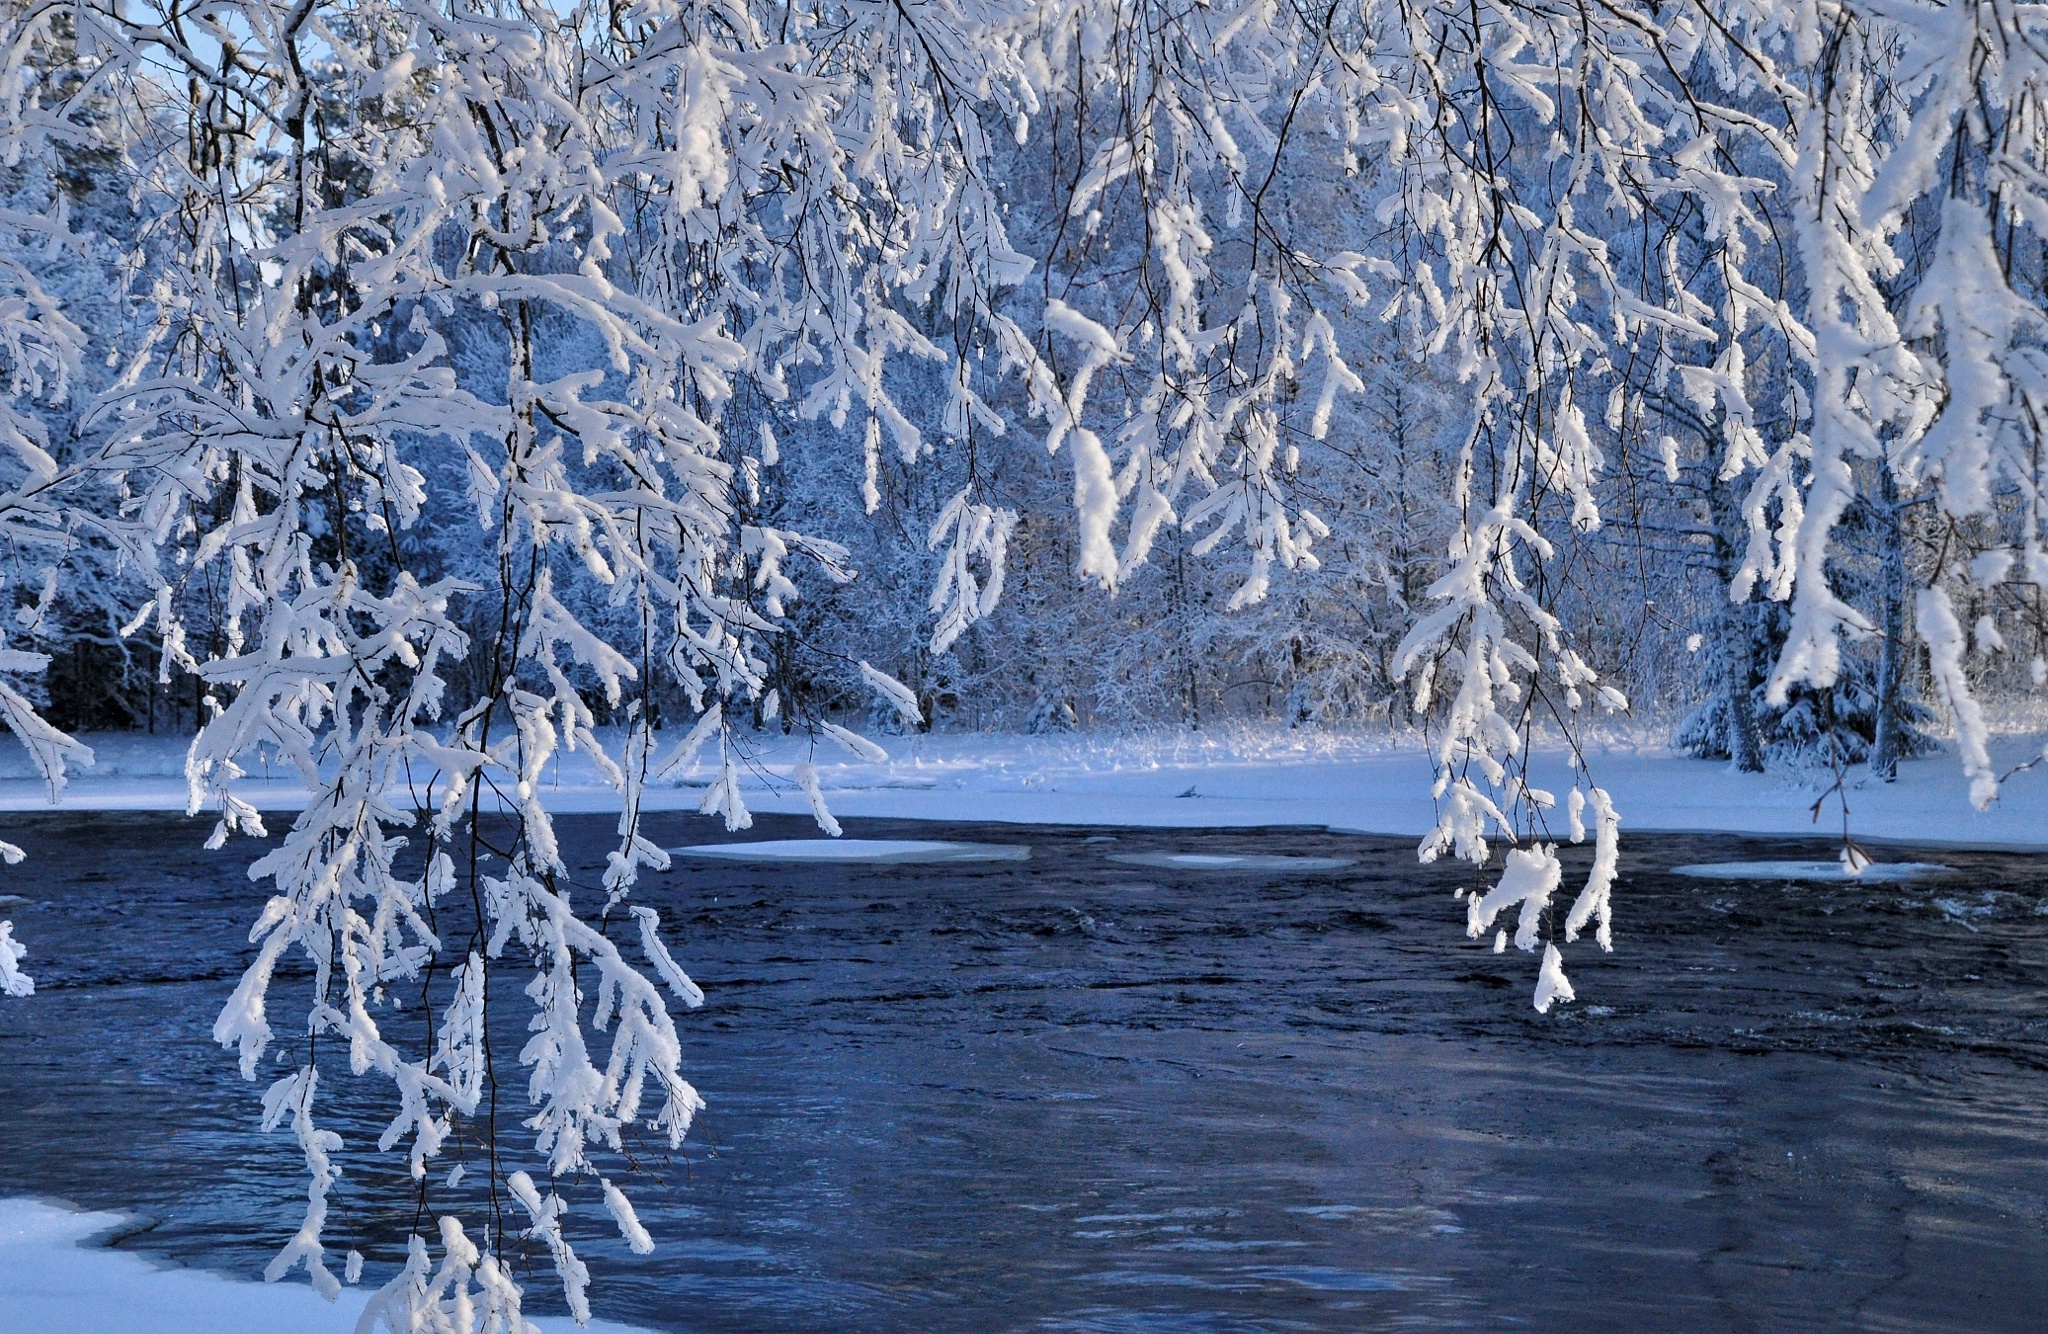 Природа снег и лед. Зимняя вода. Река зимой. Зима картинки. Снег и лед в природе.